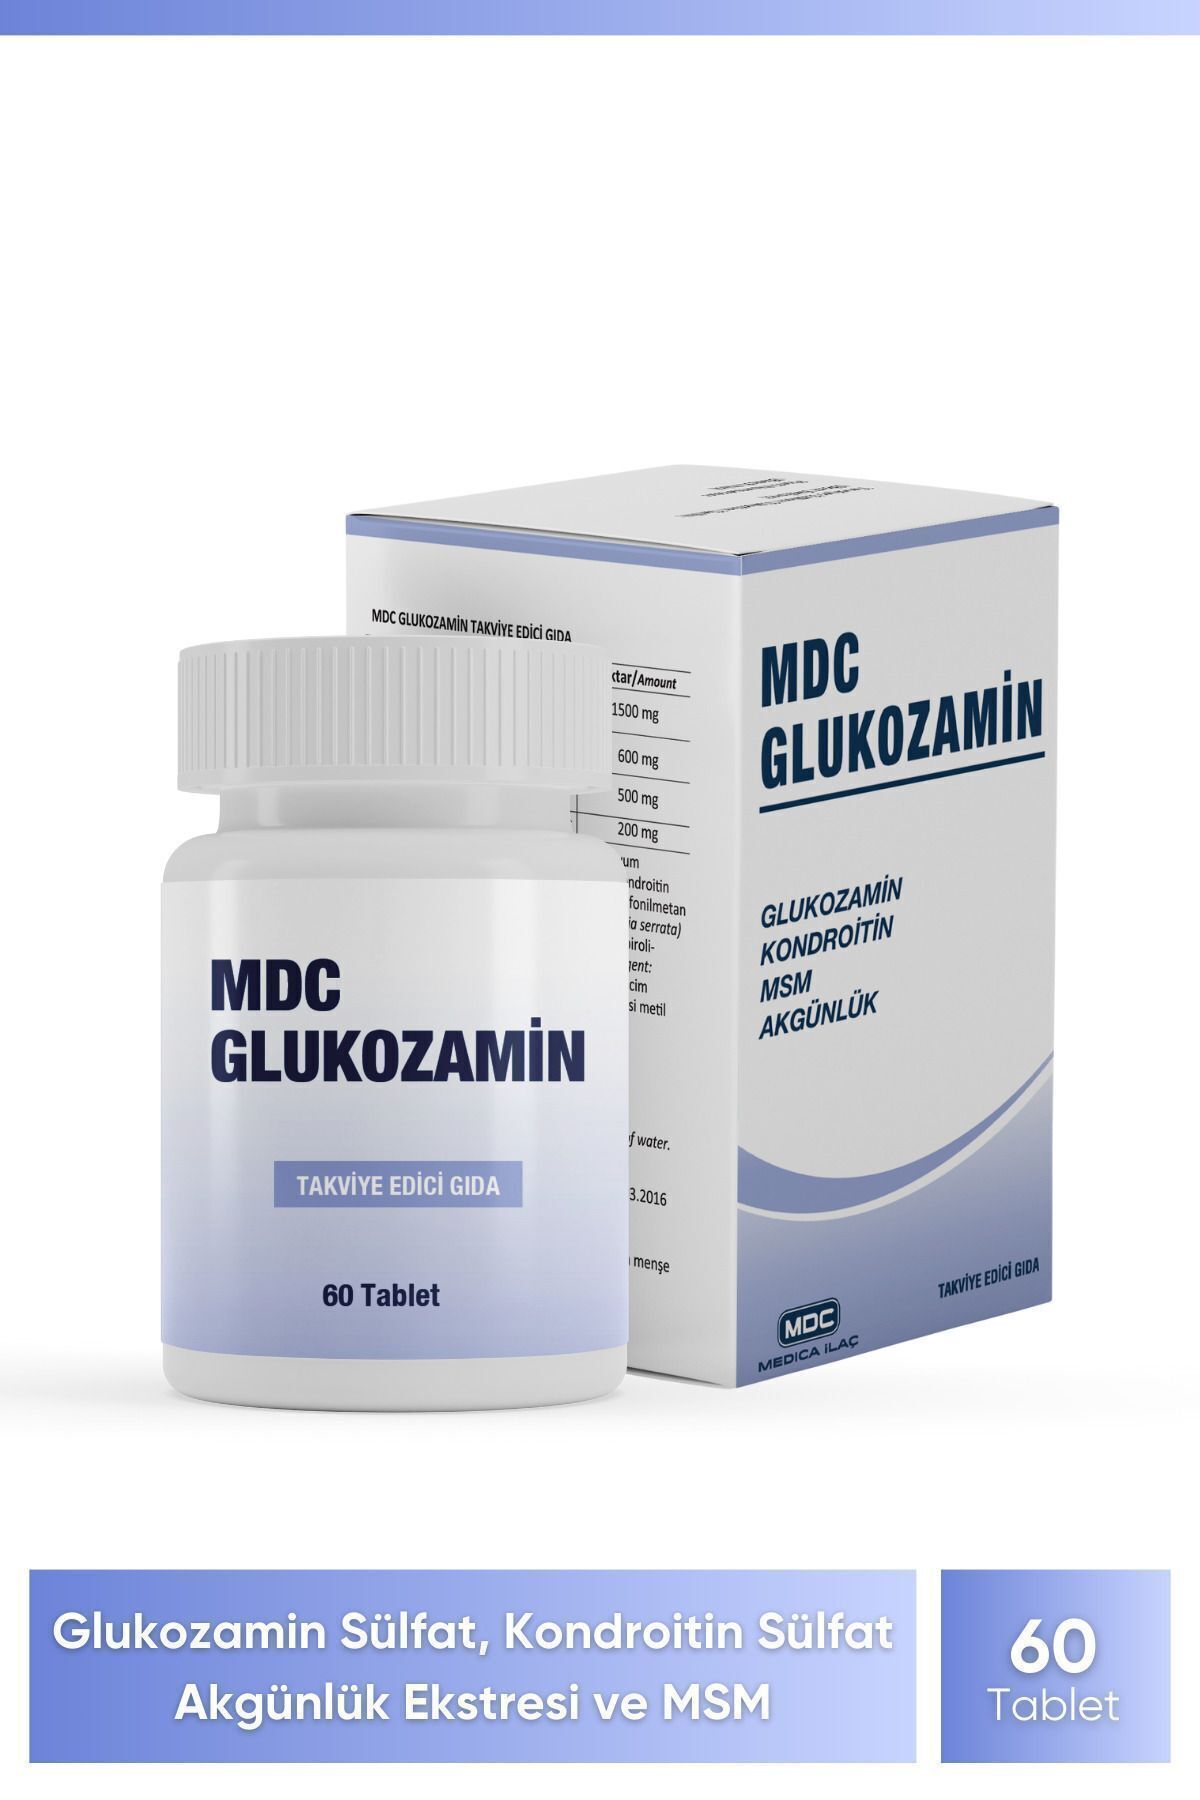 MDC Glukozamin 60 Tablet (GLUKOZAMİN, KONDROİTİN, MSM VE BOSWELLİA)